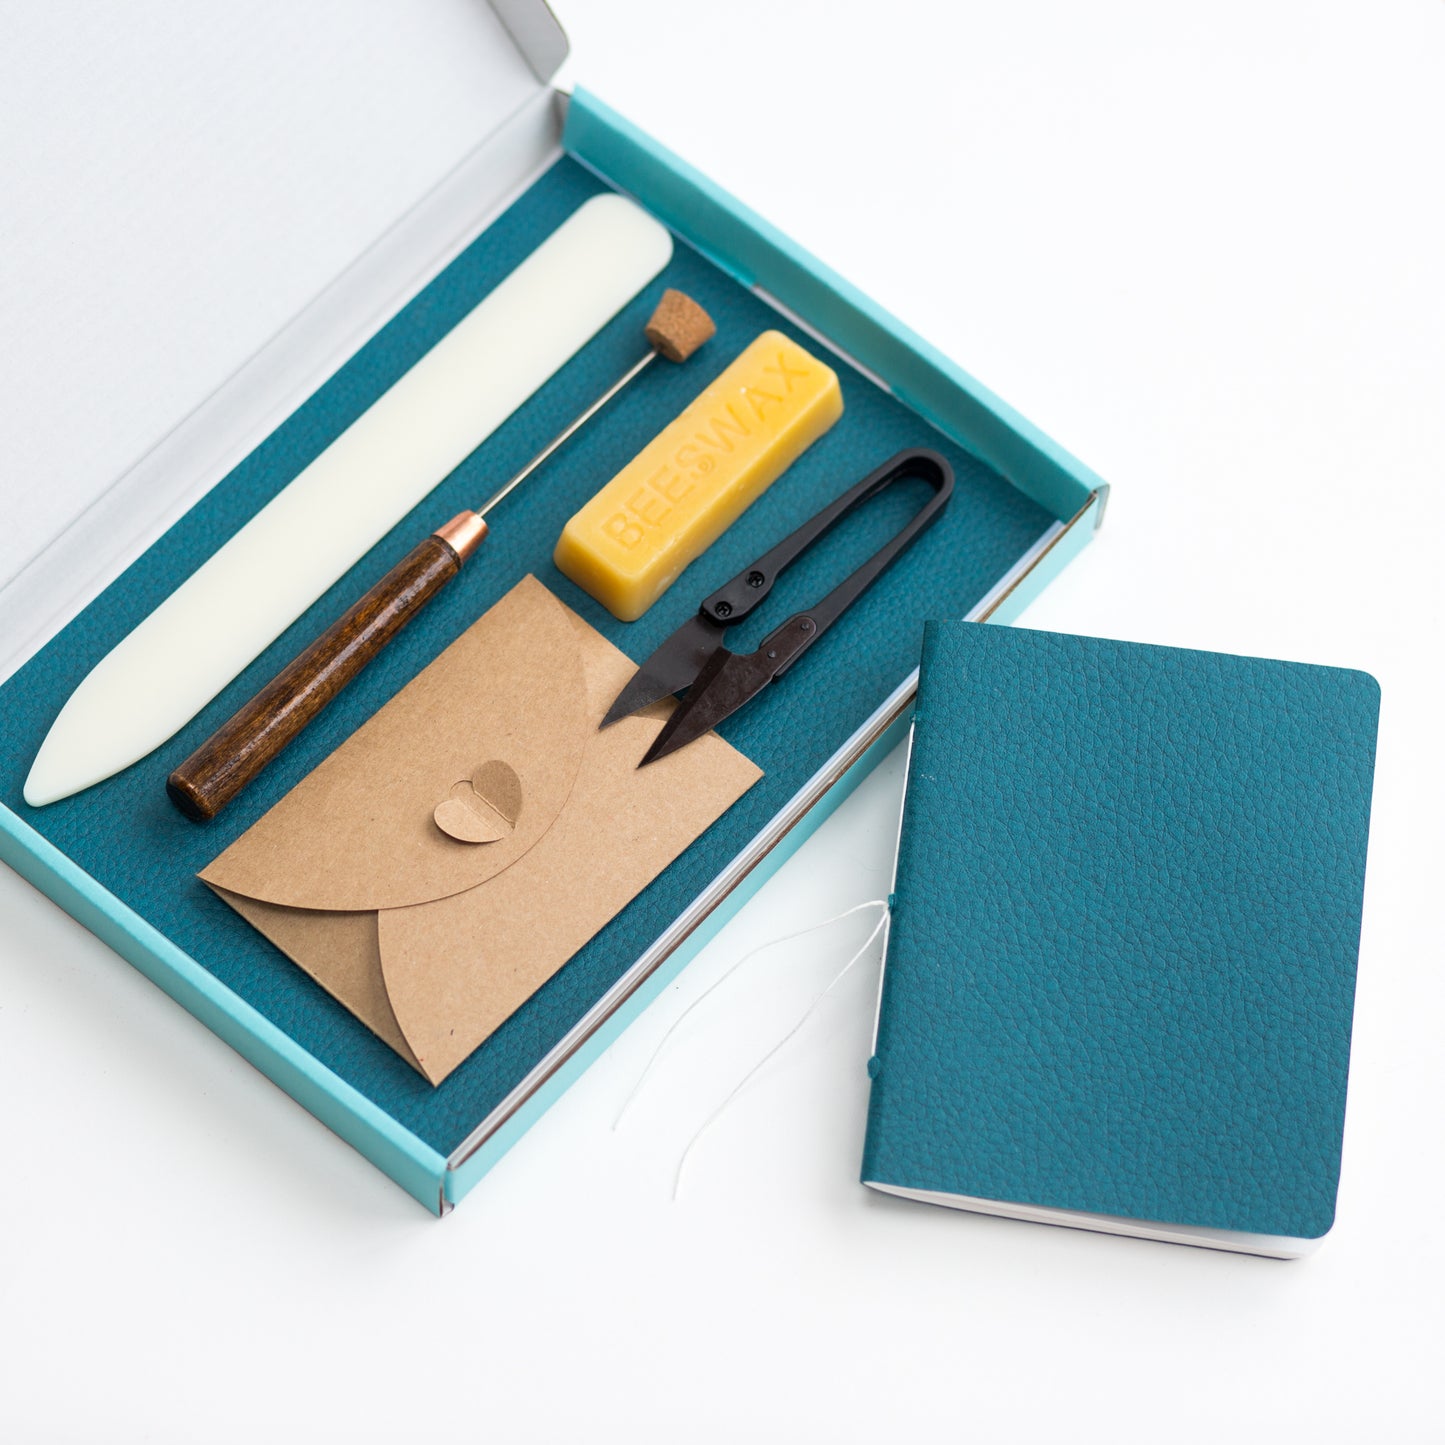 Starter Sewn Book Kit